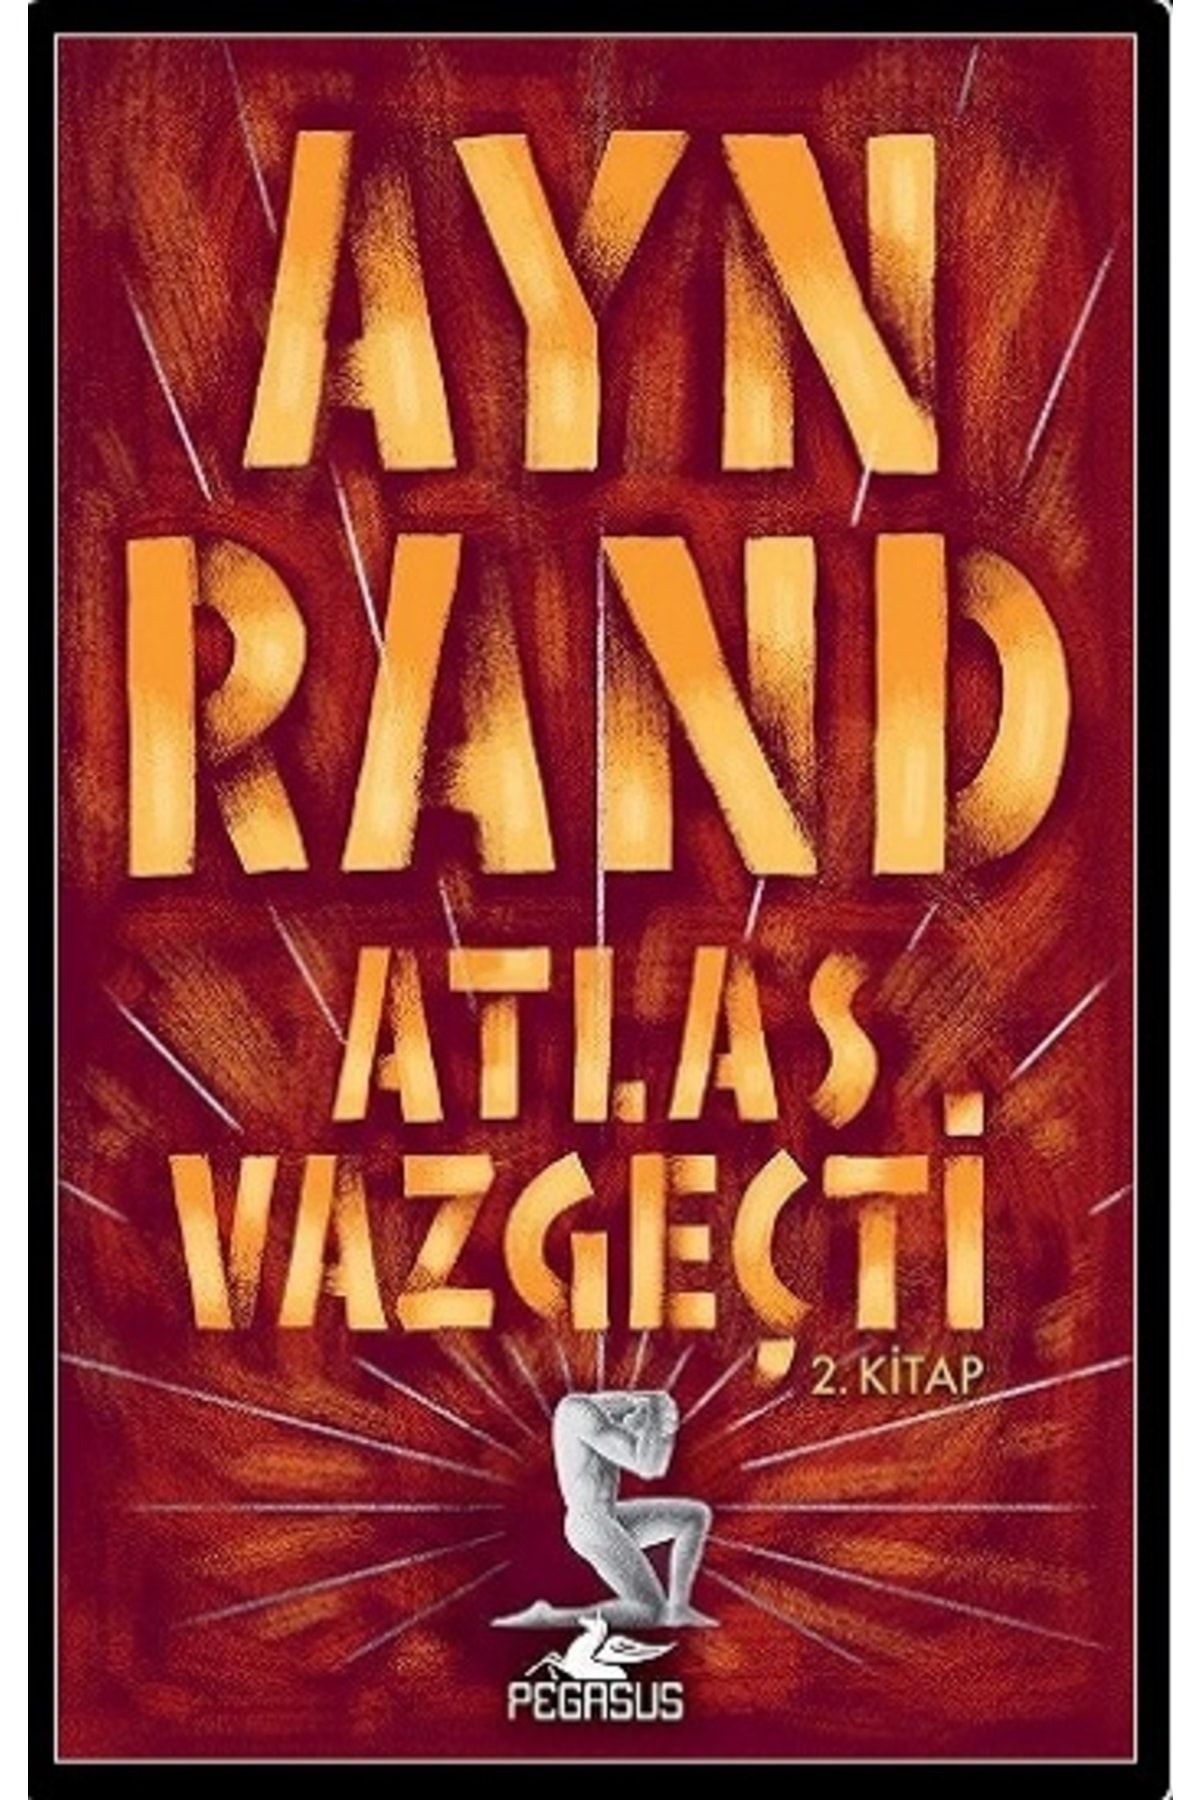 Debir Yayınları Atlas Vazgeçti 2.kitap - Pegasus Yayınları - Ayn Rand Kitabı